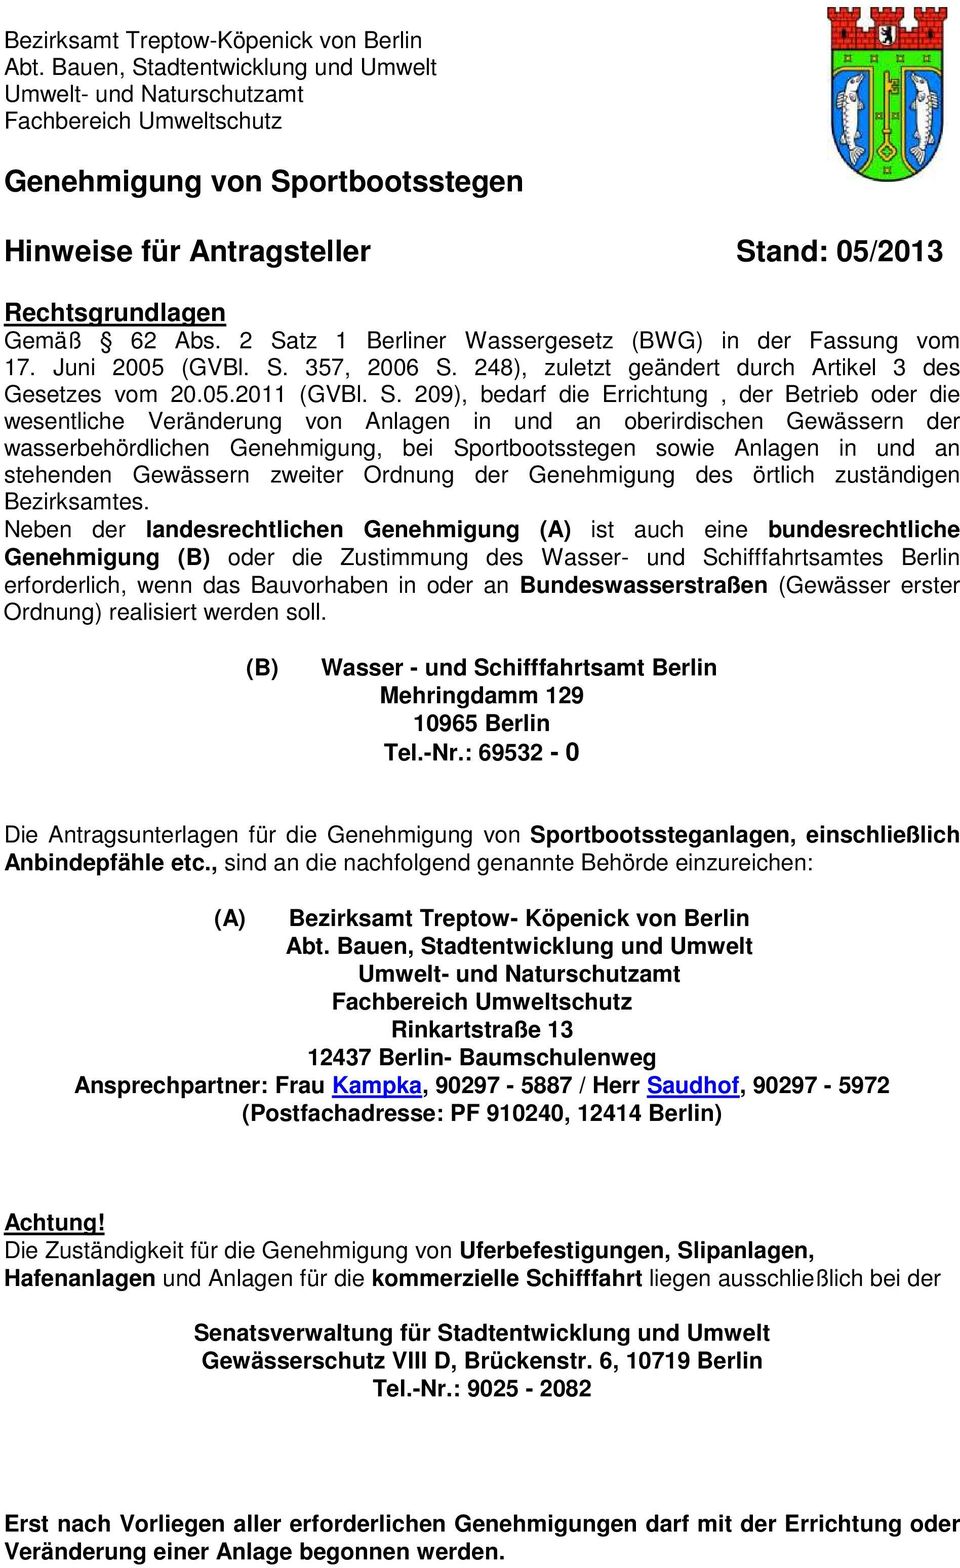 2 Satz 1 Berliner Wassergesetz (BWG) in der Fassung vom 17. Juni 2005 (GVBl. S. 357, 2006 S. 248), zuletzt geändert durch Artikel 3 des Gesetzes vom 20.05.2011 (GVBl. S. 209), bedarf die Errichtung,